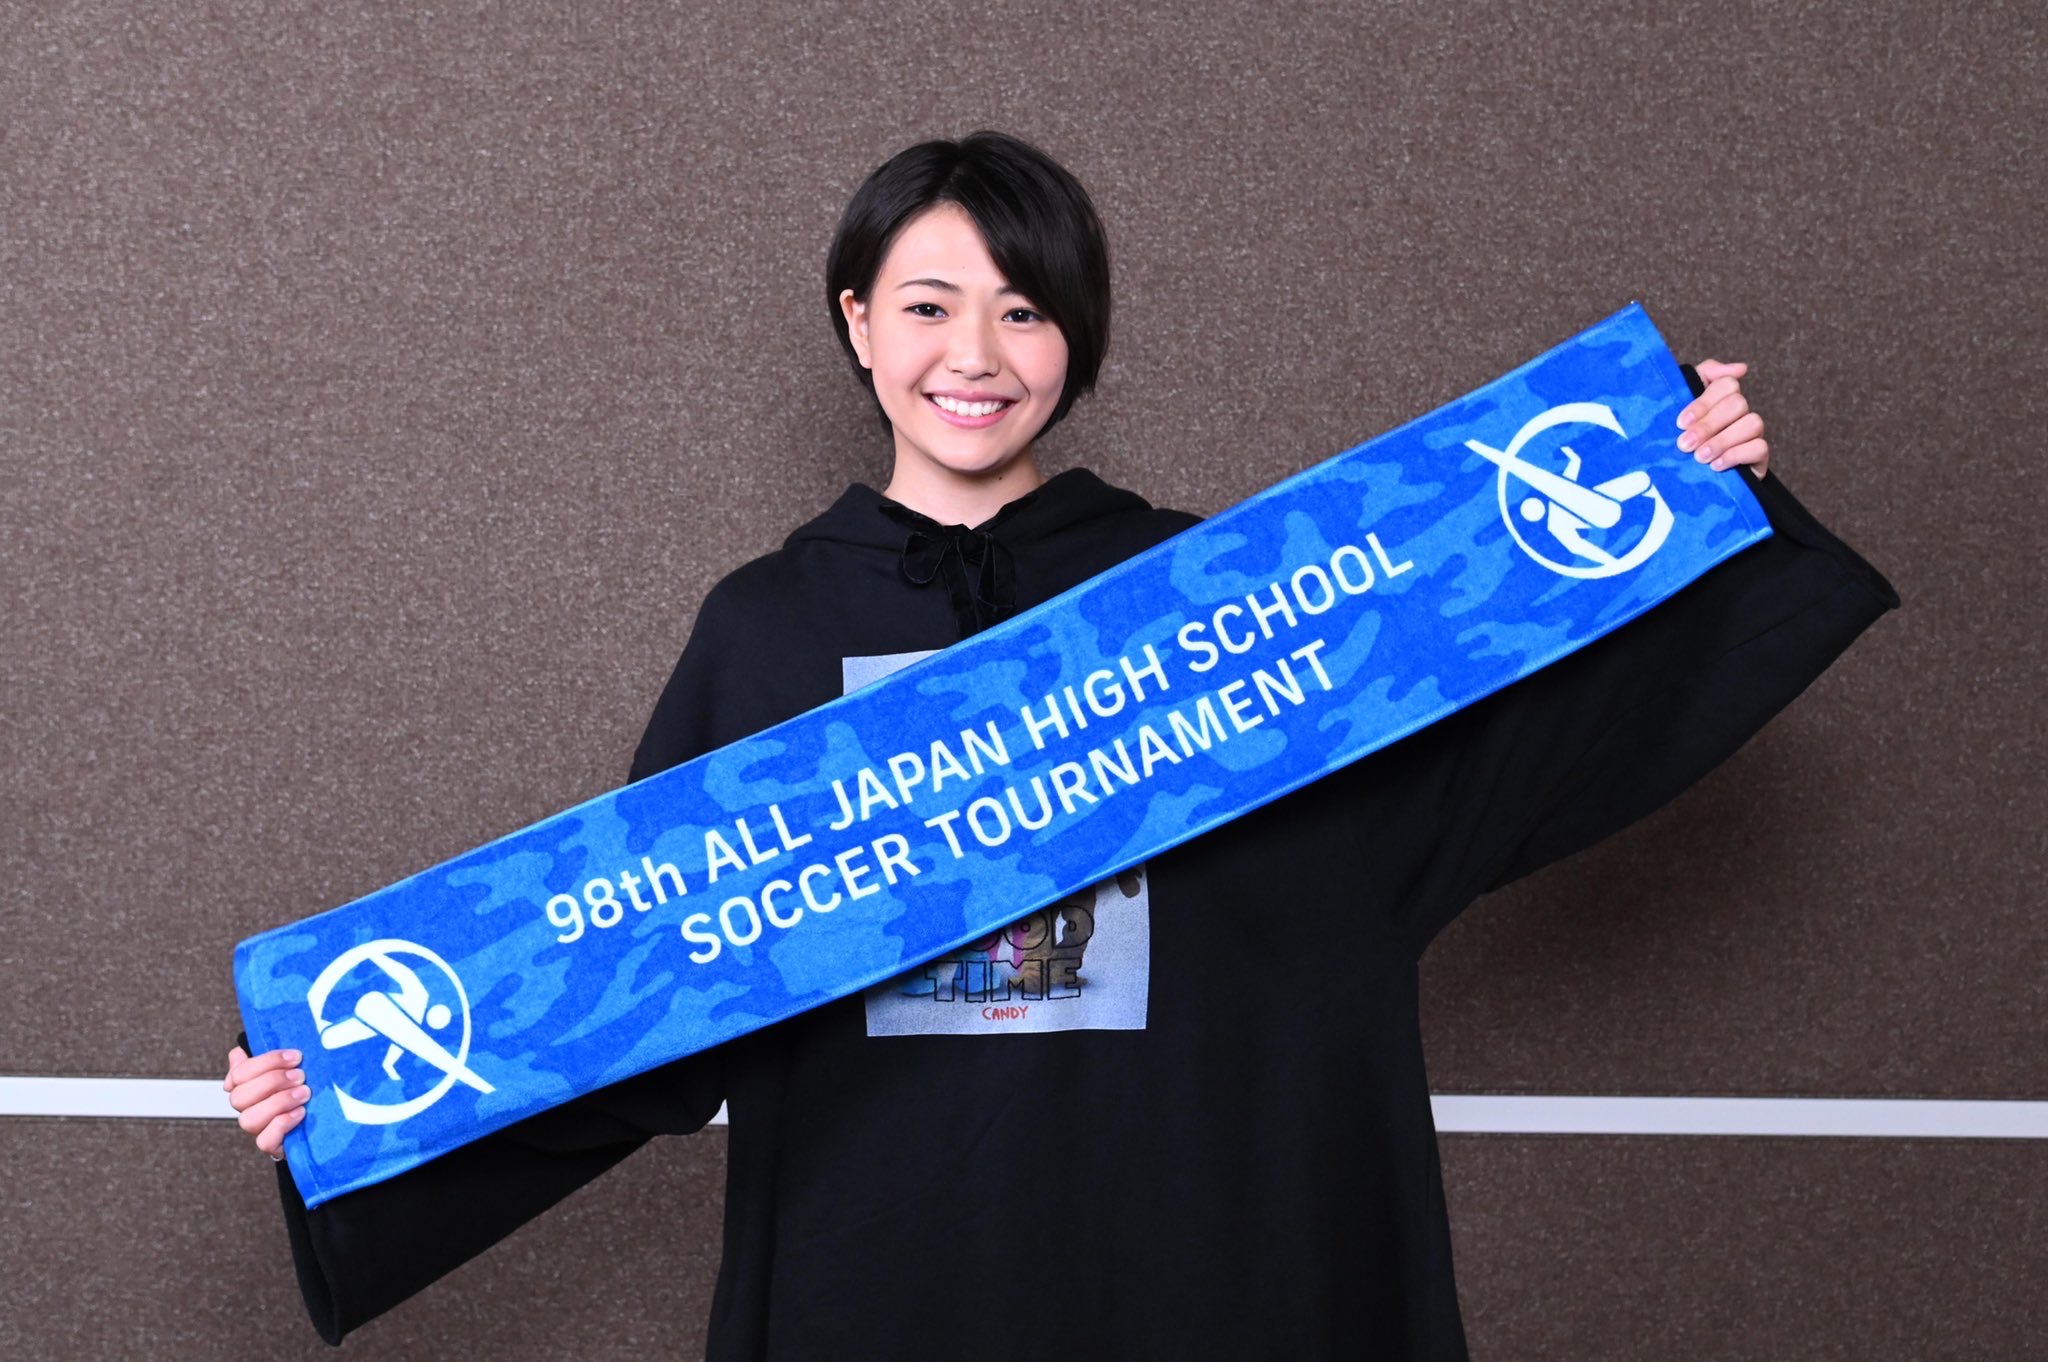 全国高校サッカー 繋げ を歌う三阪咲とは誰 インスタやオススメの動画もチェック コト旅